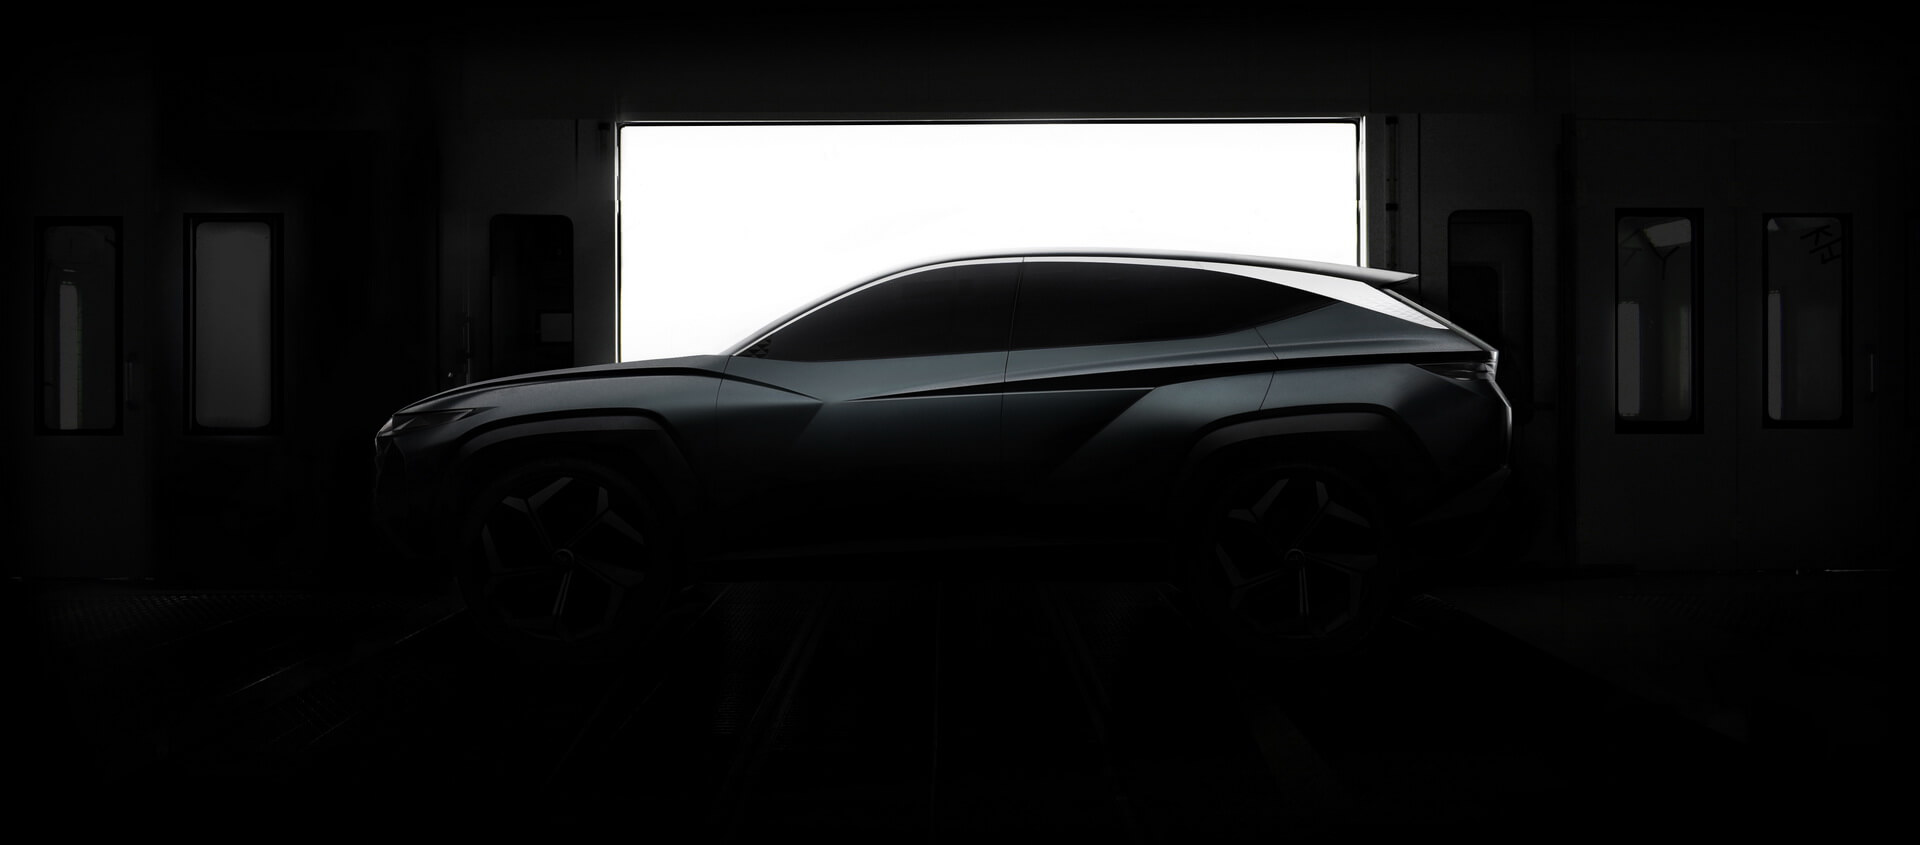 Тизер концепта будущего плагин-гибридного внедорожника Hyundai